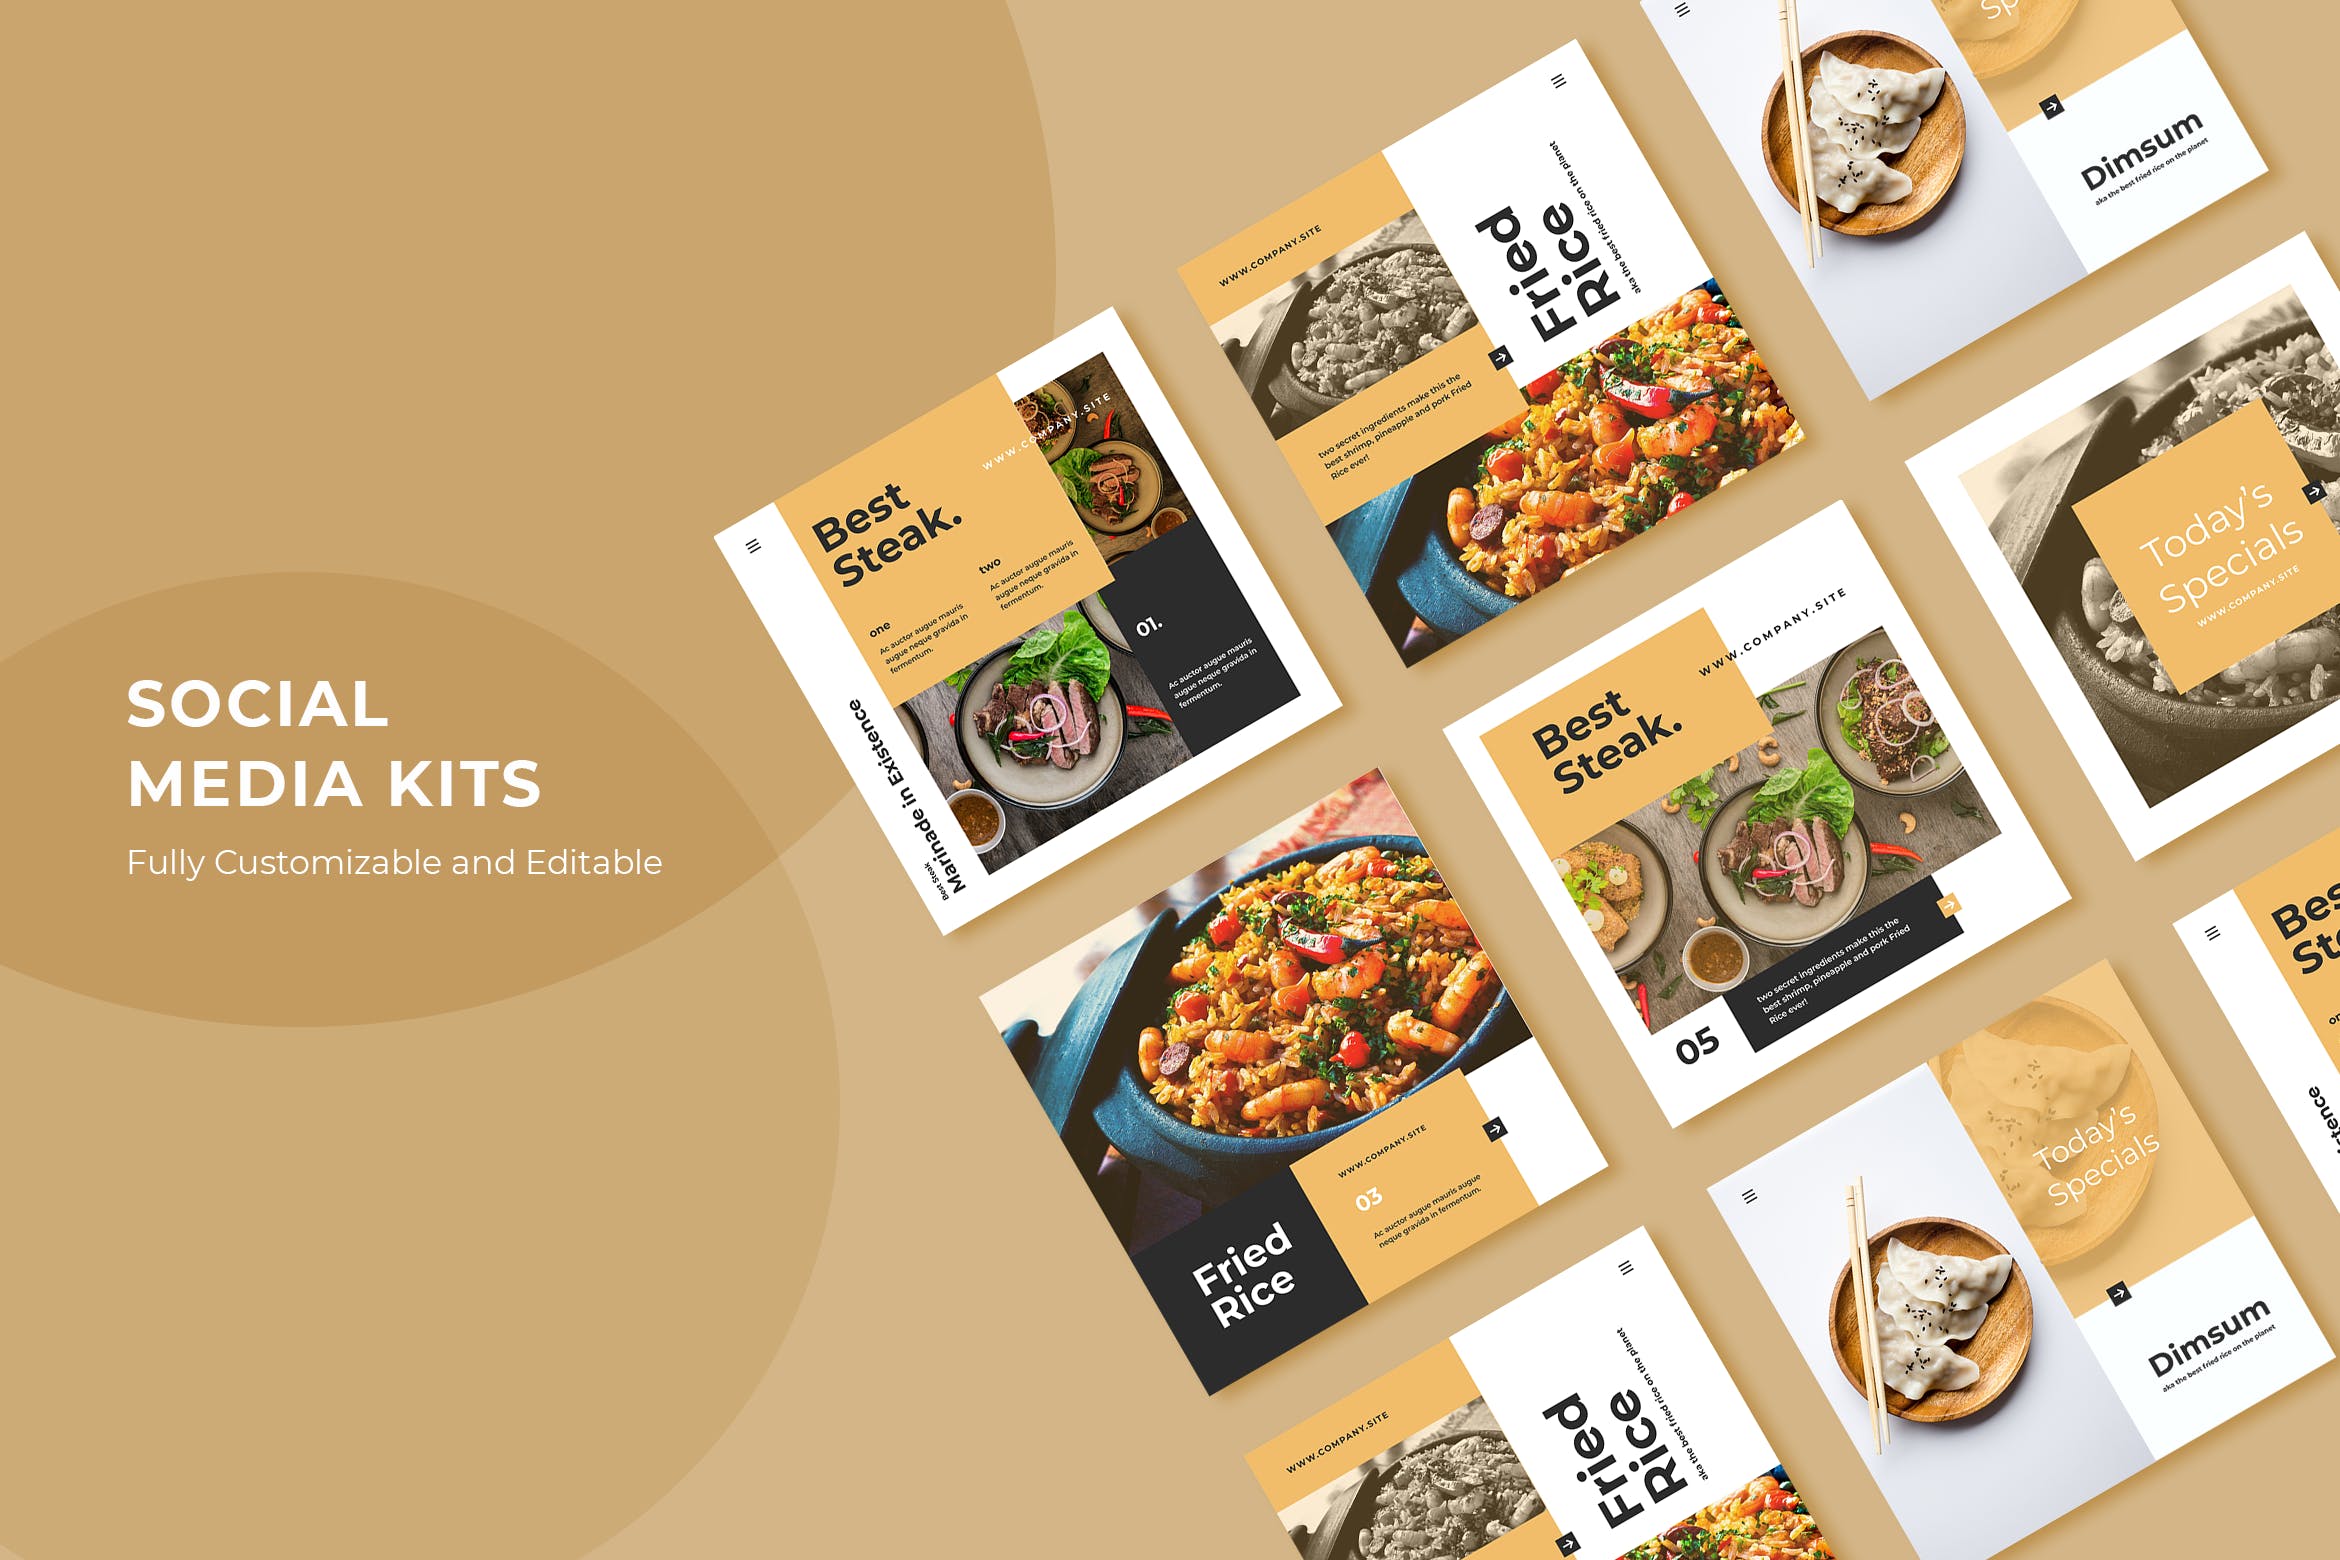 社交新媒体平台美食主题广告设计模板第一素材精选v29 ADL Social Media Kit.29插图